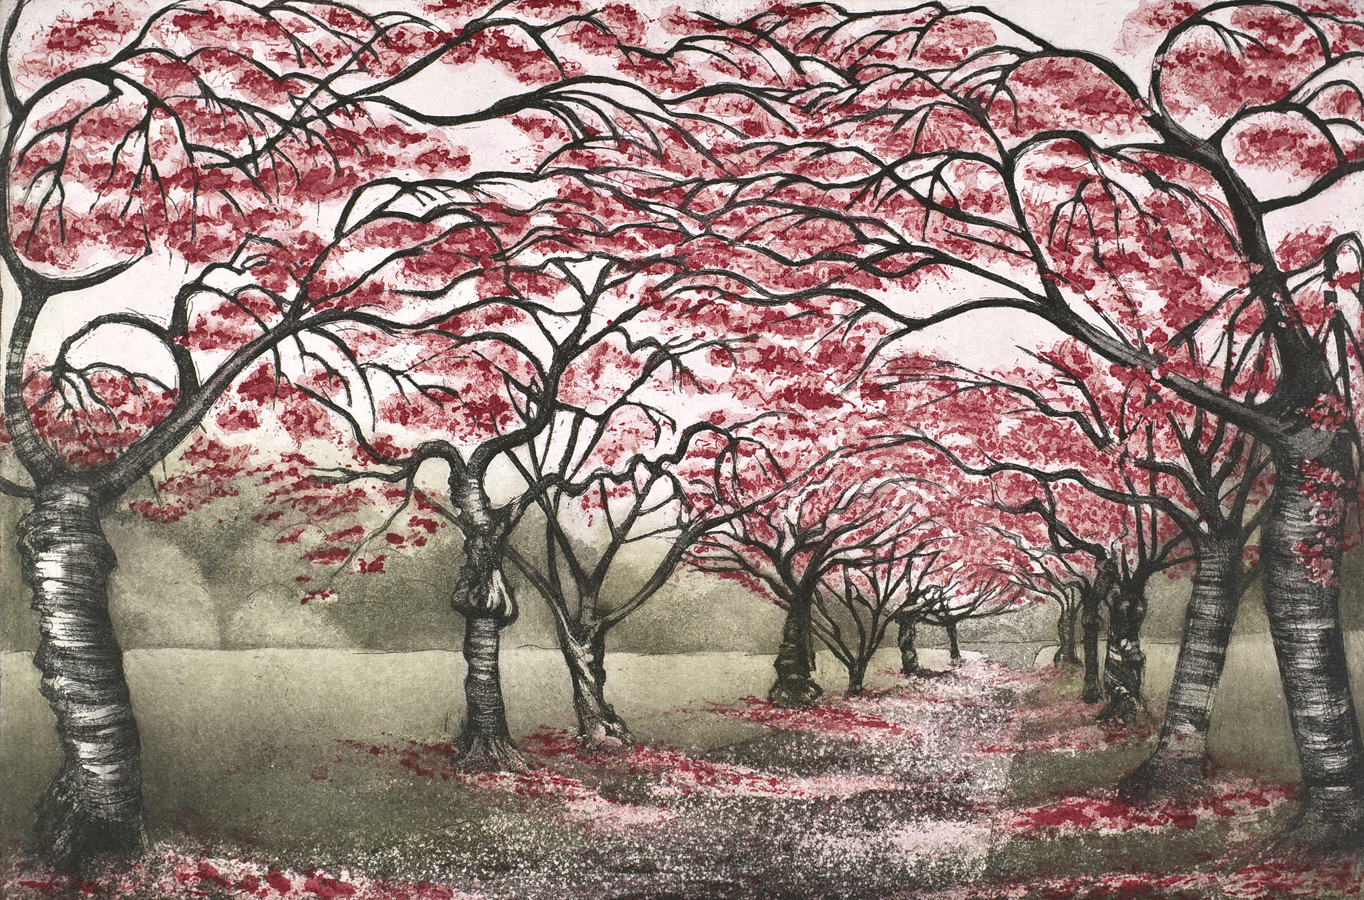 'Cherry Blossom Walk' by Morna Rhys